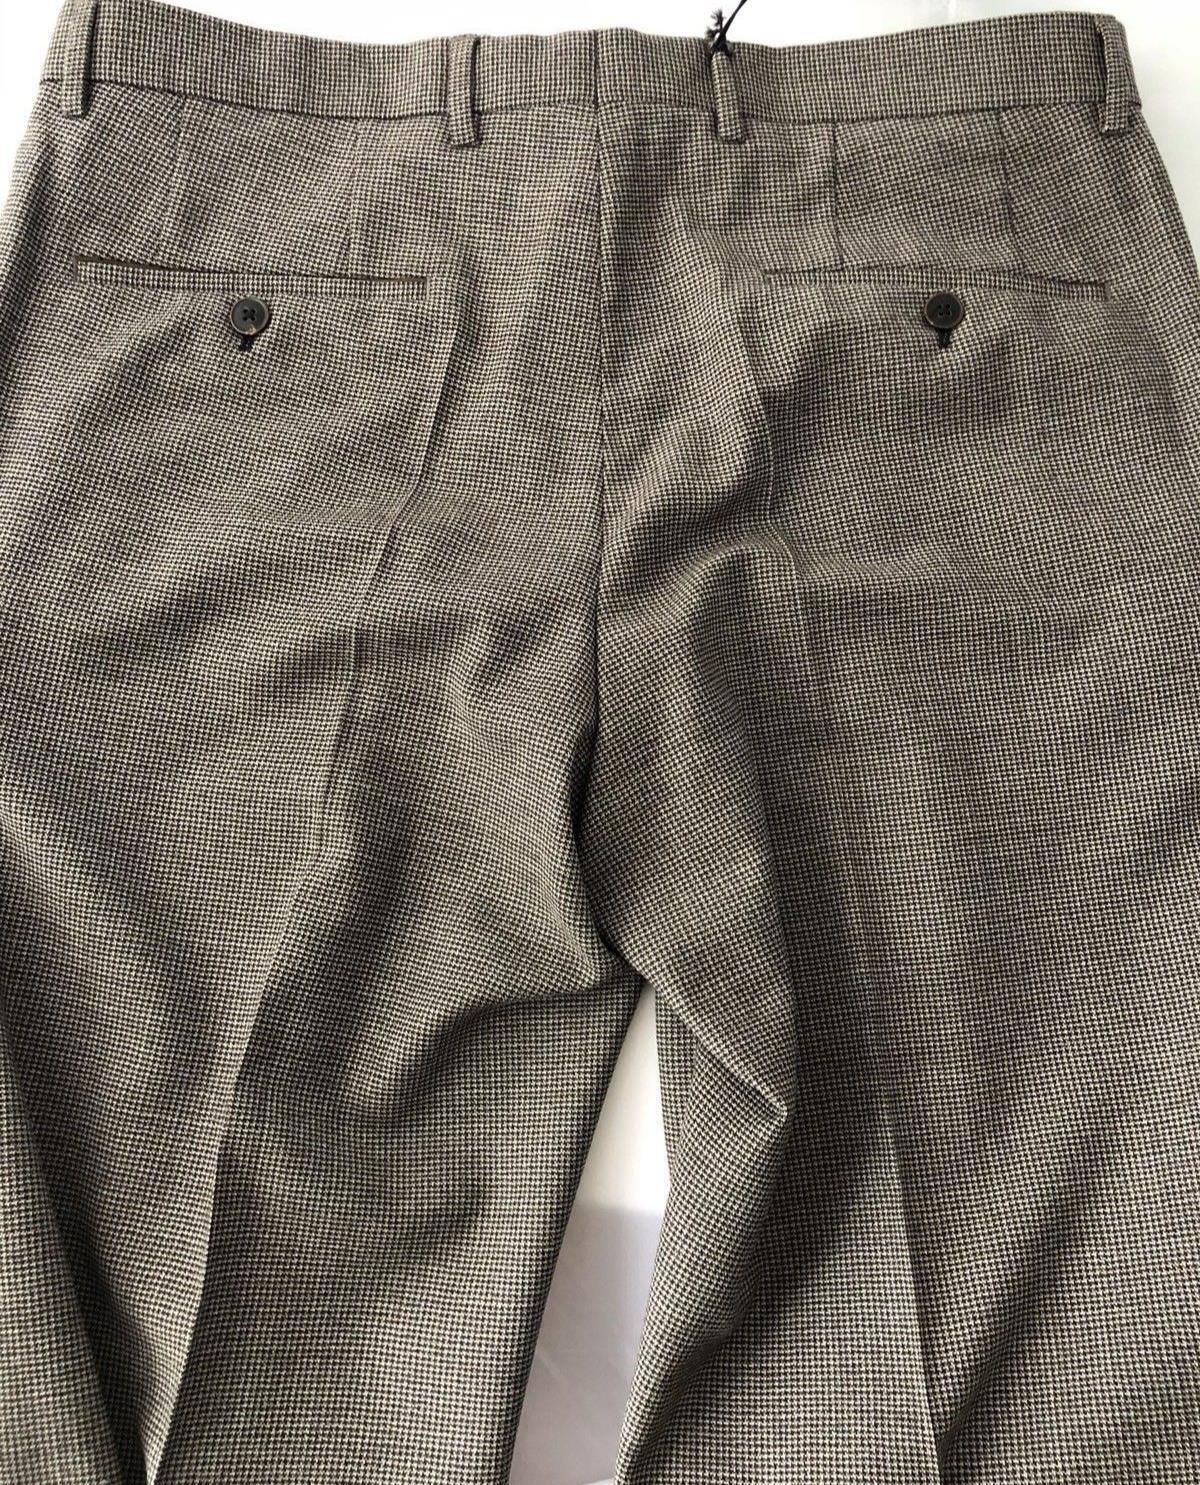 Мужские коричневые классические брюки Boss Hugo Boss Giro2, размер 34, шерсть США, 245 долларов США 